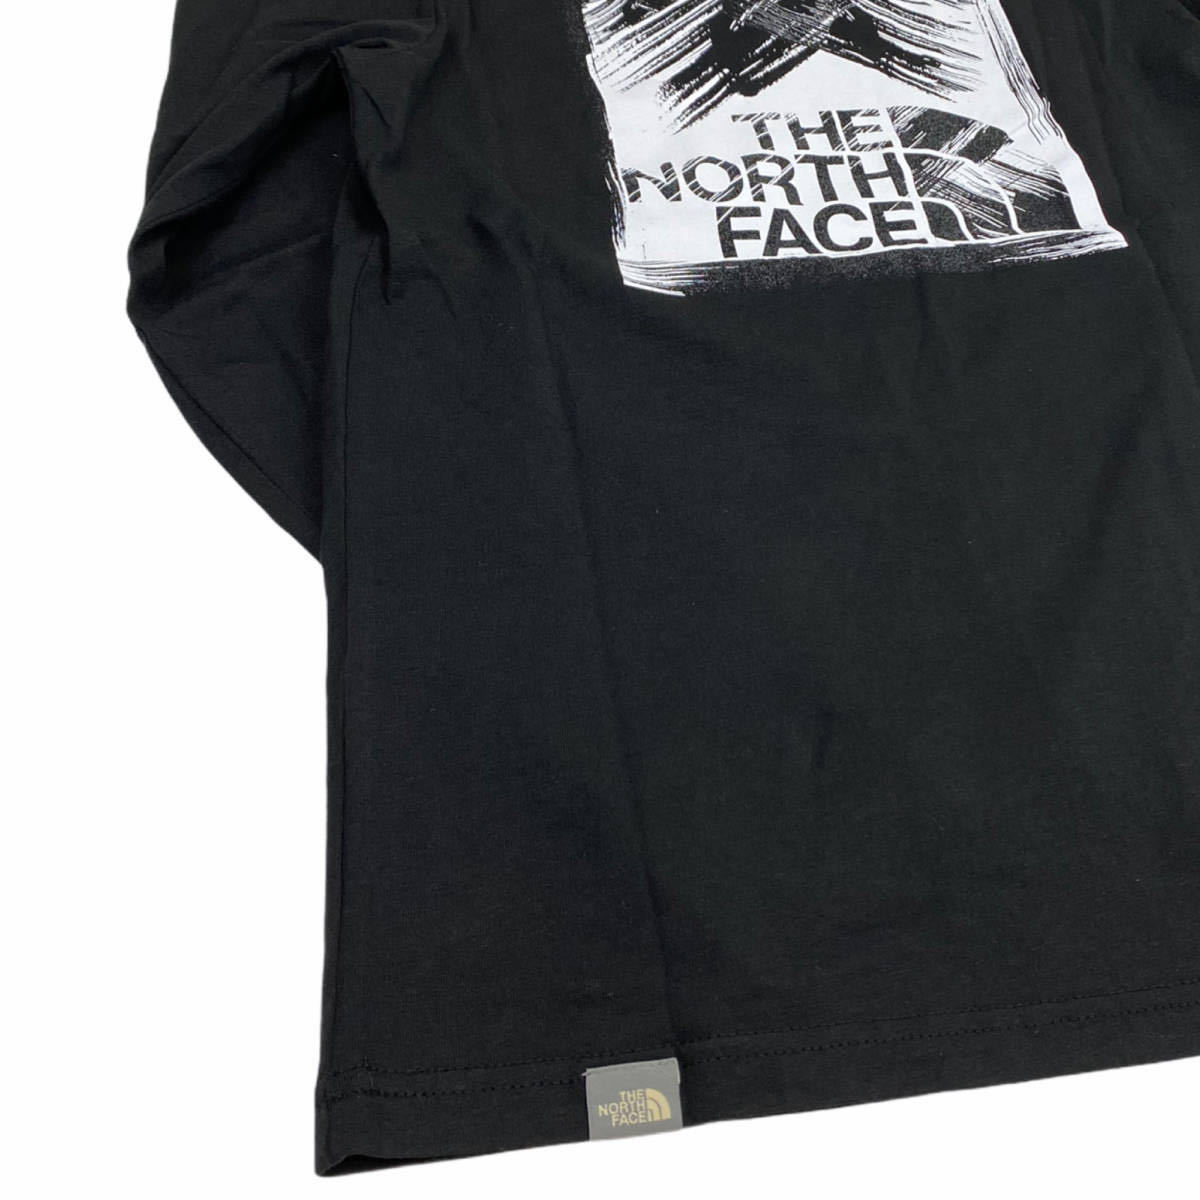 ノースフェイス ロンT 長袖 ボックス Tシャツ NF0A55ACL バックログ ブラック XSサイズ THE NORTH FACE STROKE MOUNTAIN TEE 新品